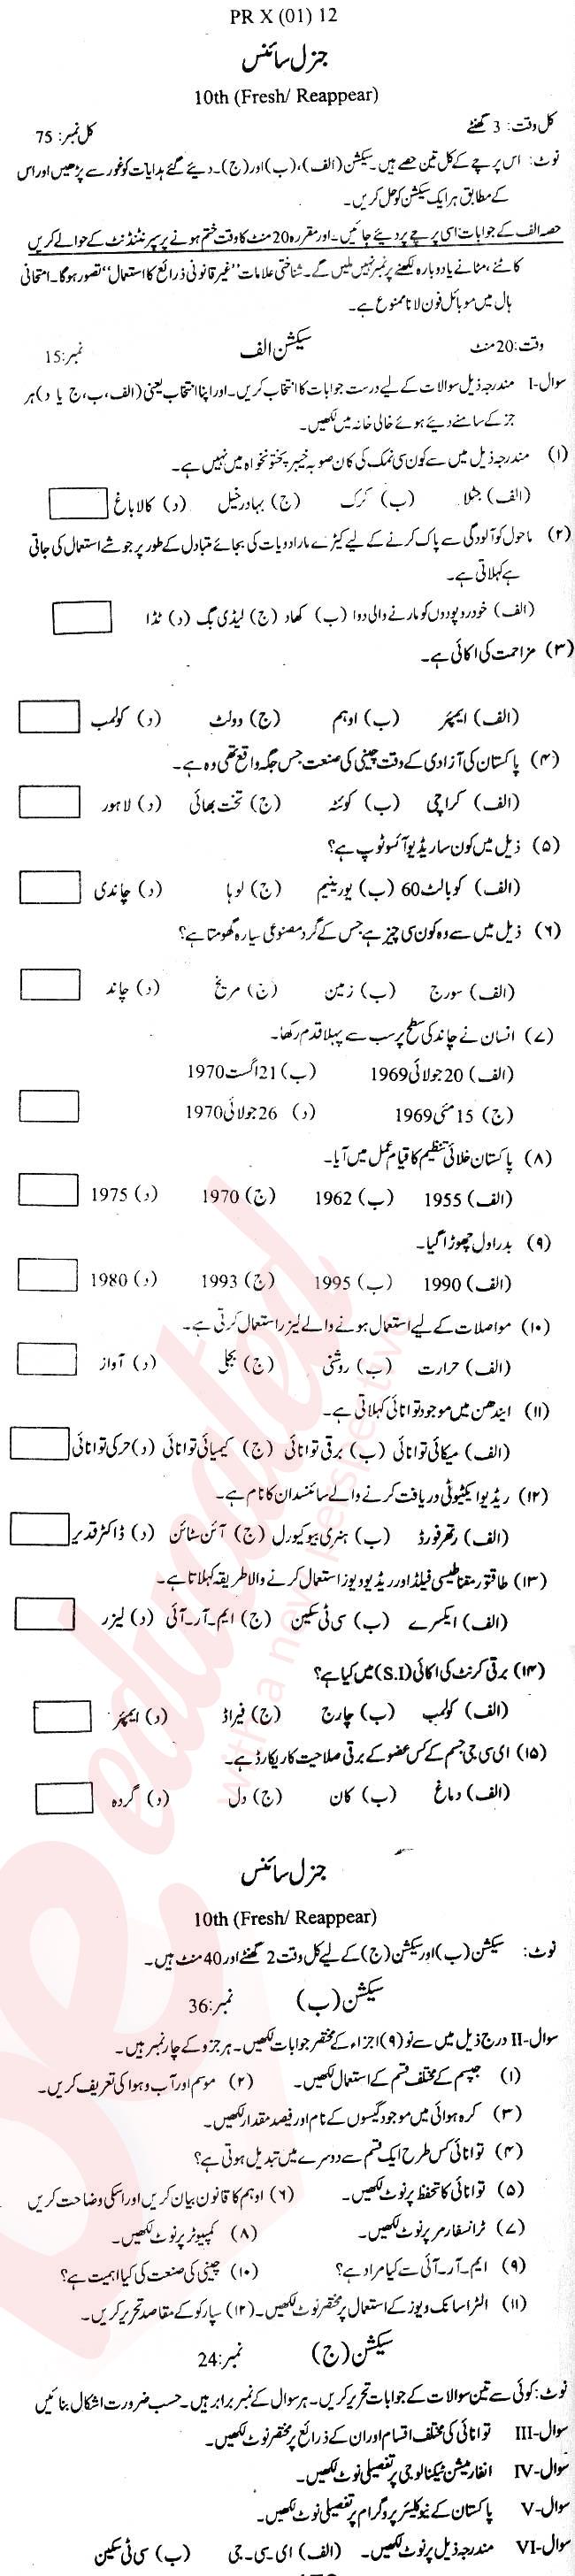 General Science 10th Urdu Medium Past Paper Group 1 BISE Kohat 2012